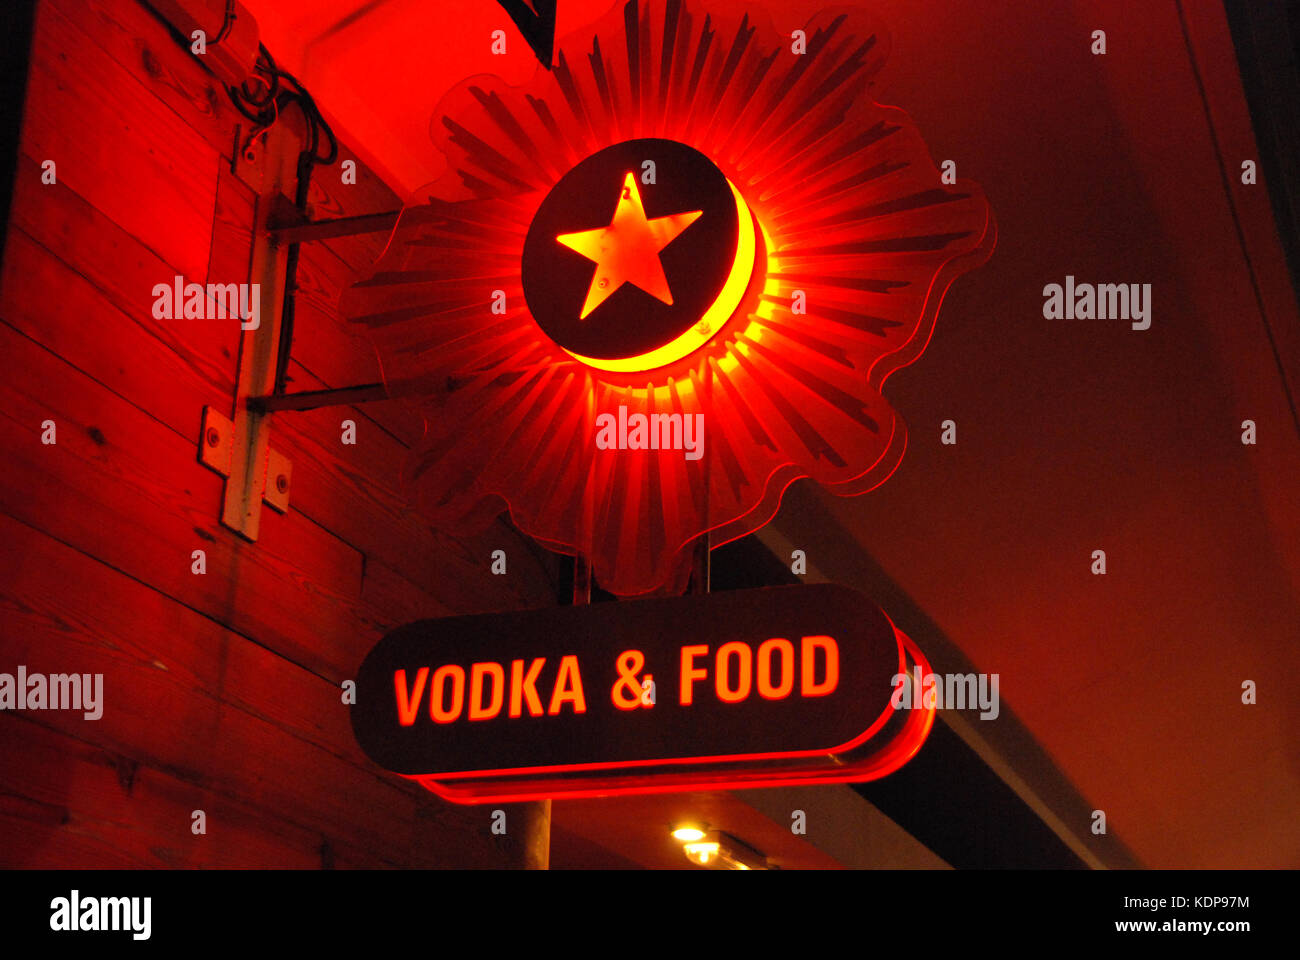 2000, Nahaufnahme eines roten, orangen und gelben Leuchtreklame bei Nacht mit einem roten Stern logo und Wodka & die Worte 'Nahrung' in Großbuchstaben darunter, London, England. Sowohl die Red Star und Wodka sind symbolisch für die kommunistischen Land Russland. Stockfoto